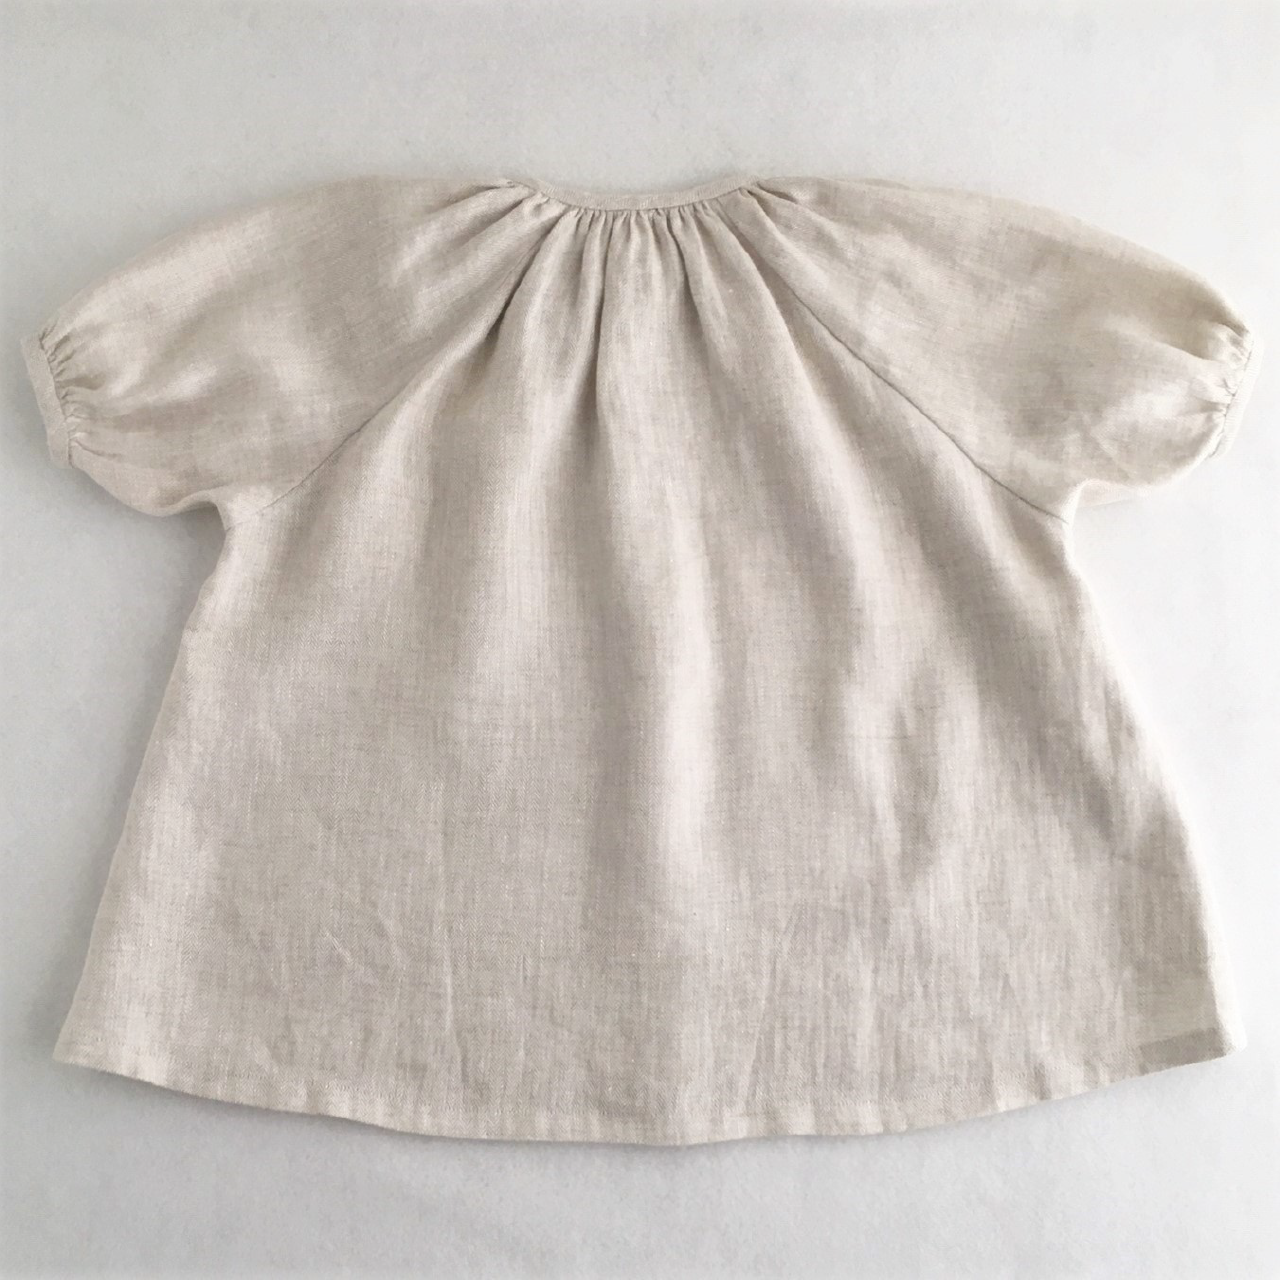 ギャザーワンピース 70 130サイズ 型紙 作り方のセット Op 1910 子供服の型紙ショップ Tsukuro ツクロ